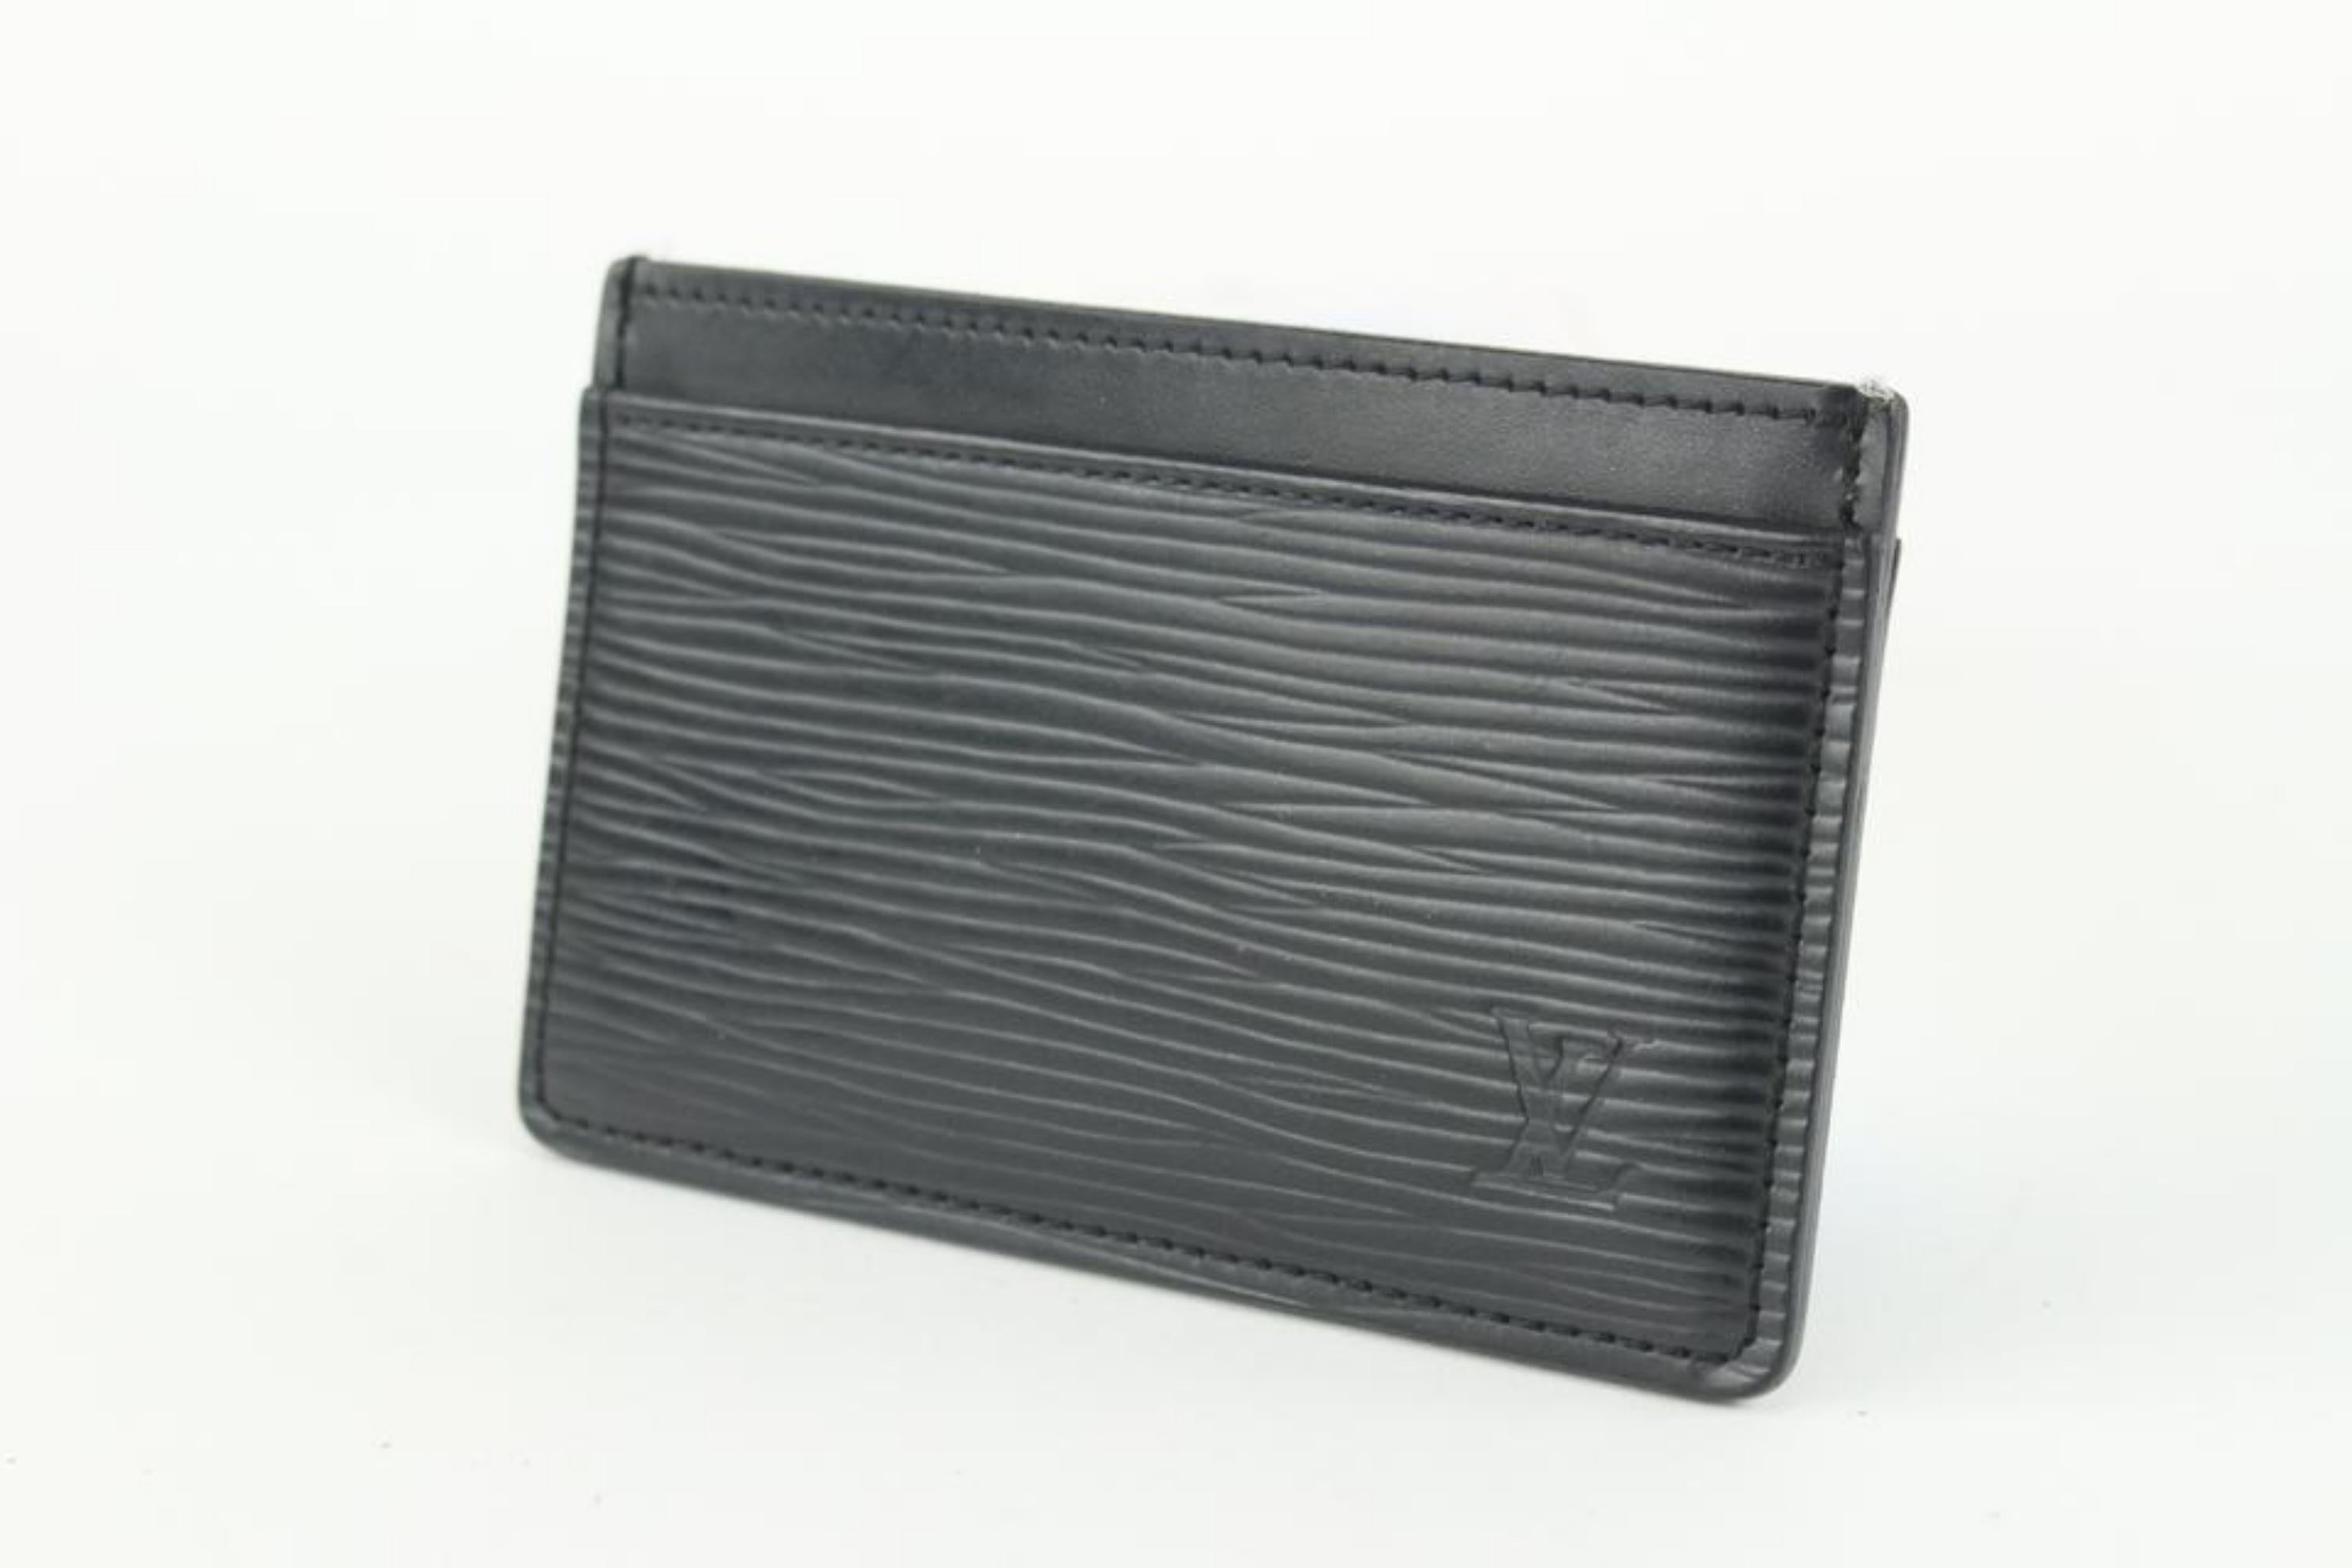 Louis Vuitton Black Epi Leather Noir Card Holder Porte Cartes 1029lv39 6